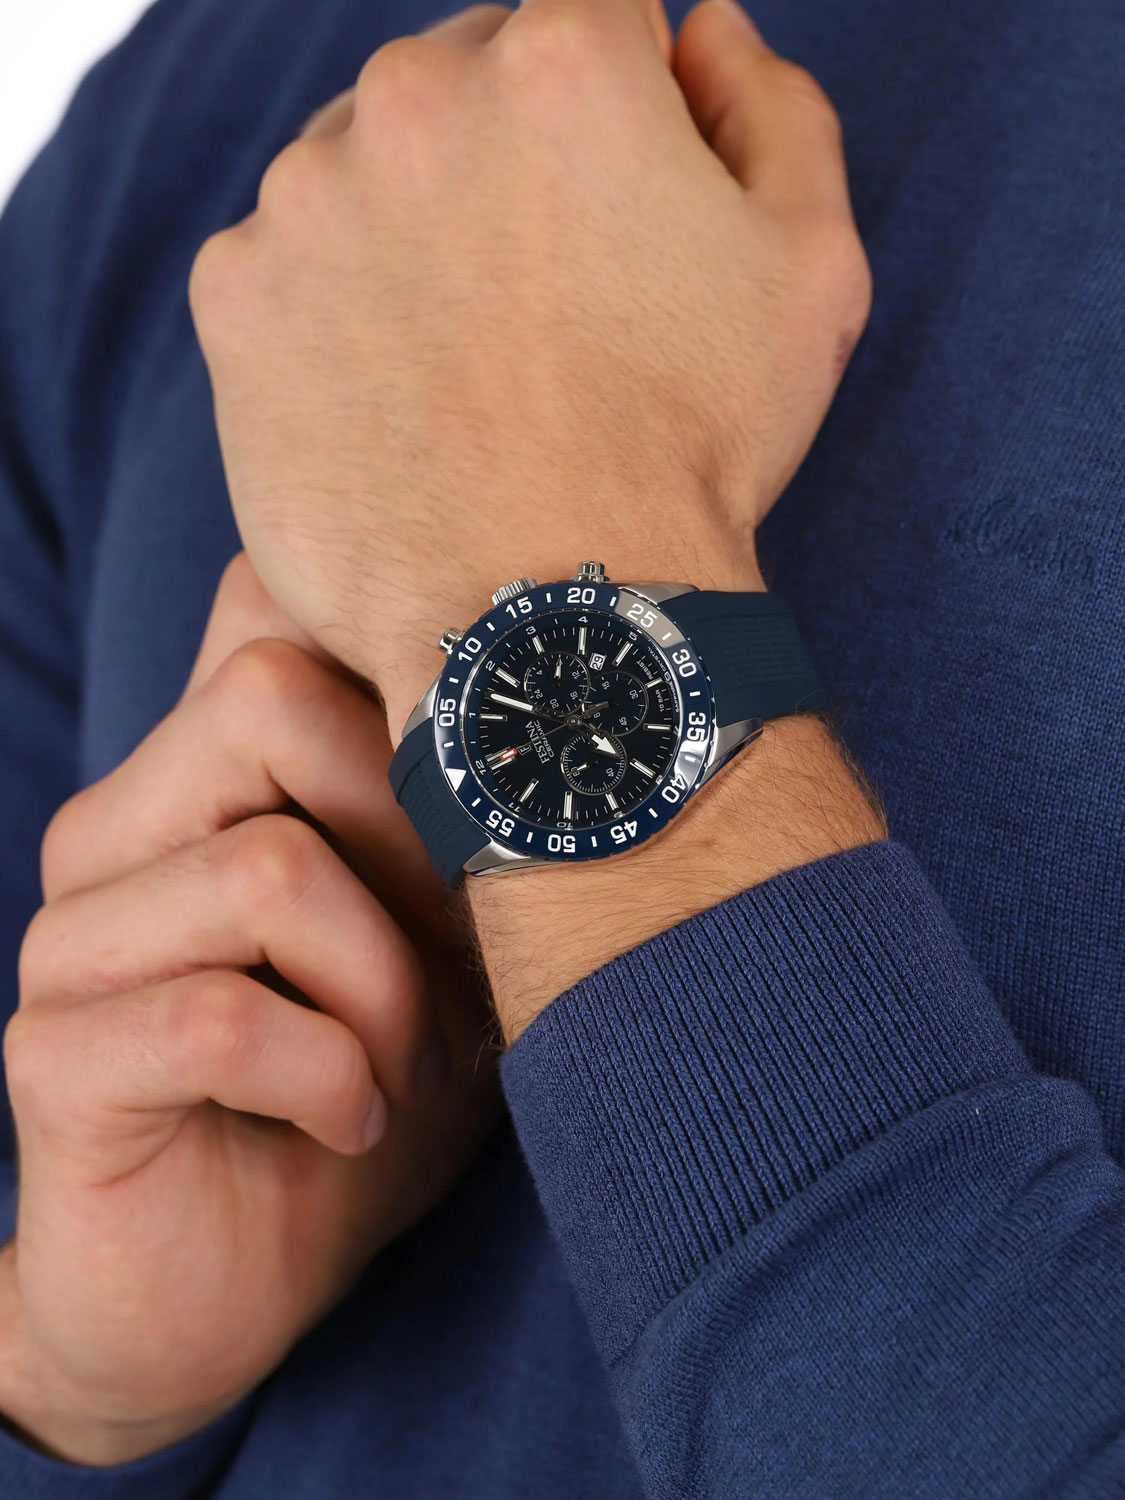 Наручные часы Festina — по купить F20515/1 характеристики, в интернет-магазине AllTime.ru лучшей описание фото, цене